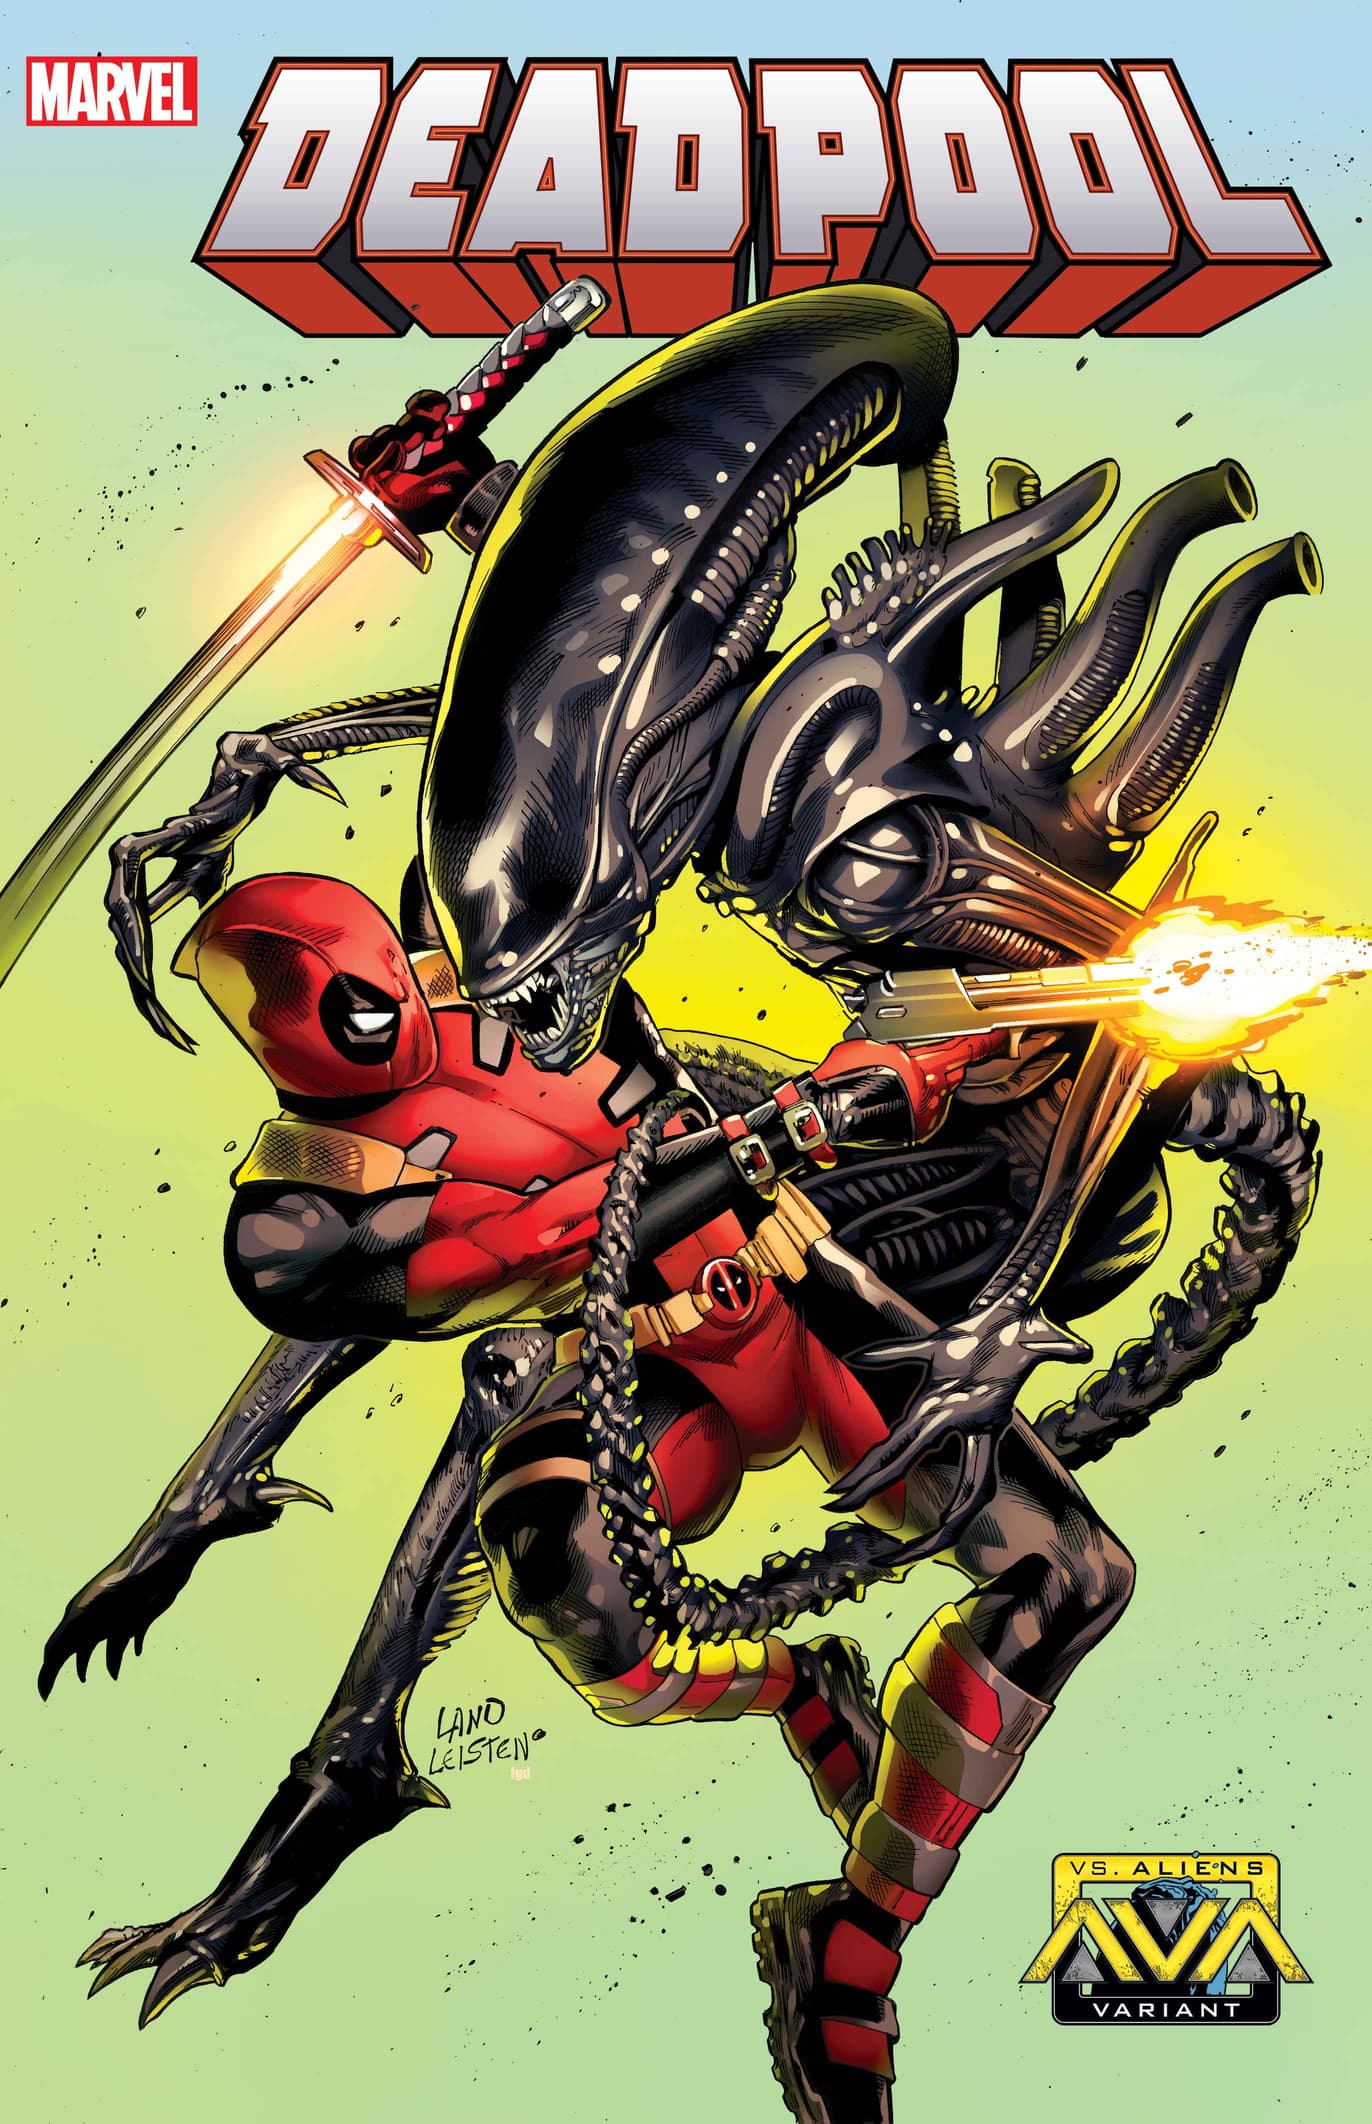 DEADPOOL #4 Marvel Vs. Alien Variant Cover by Greg Land